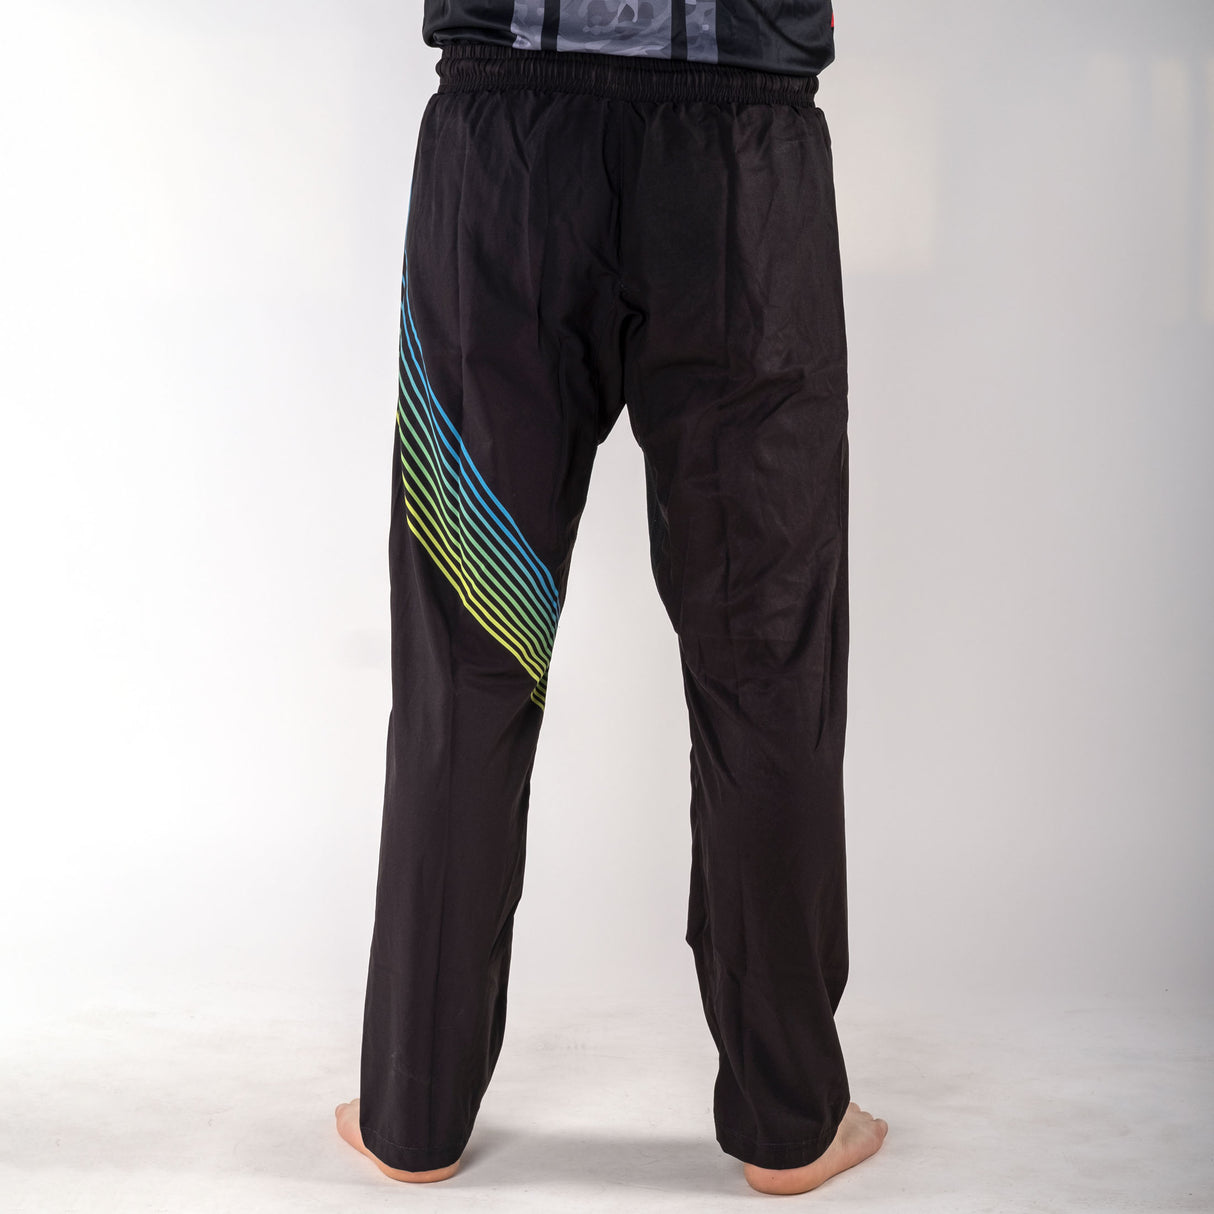 Pantalon de combat - FIGHT - noir/arc-en-ciel, FF-P004B